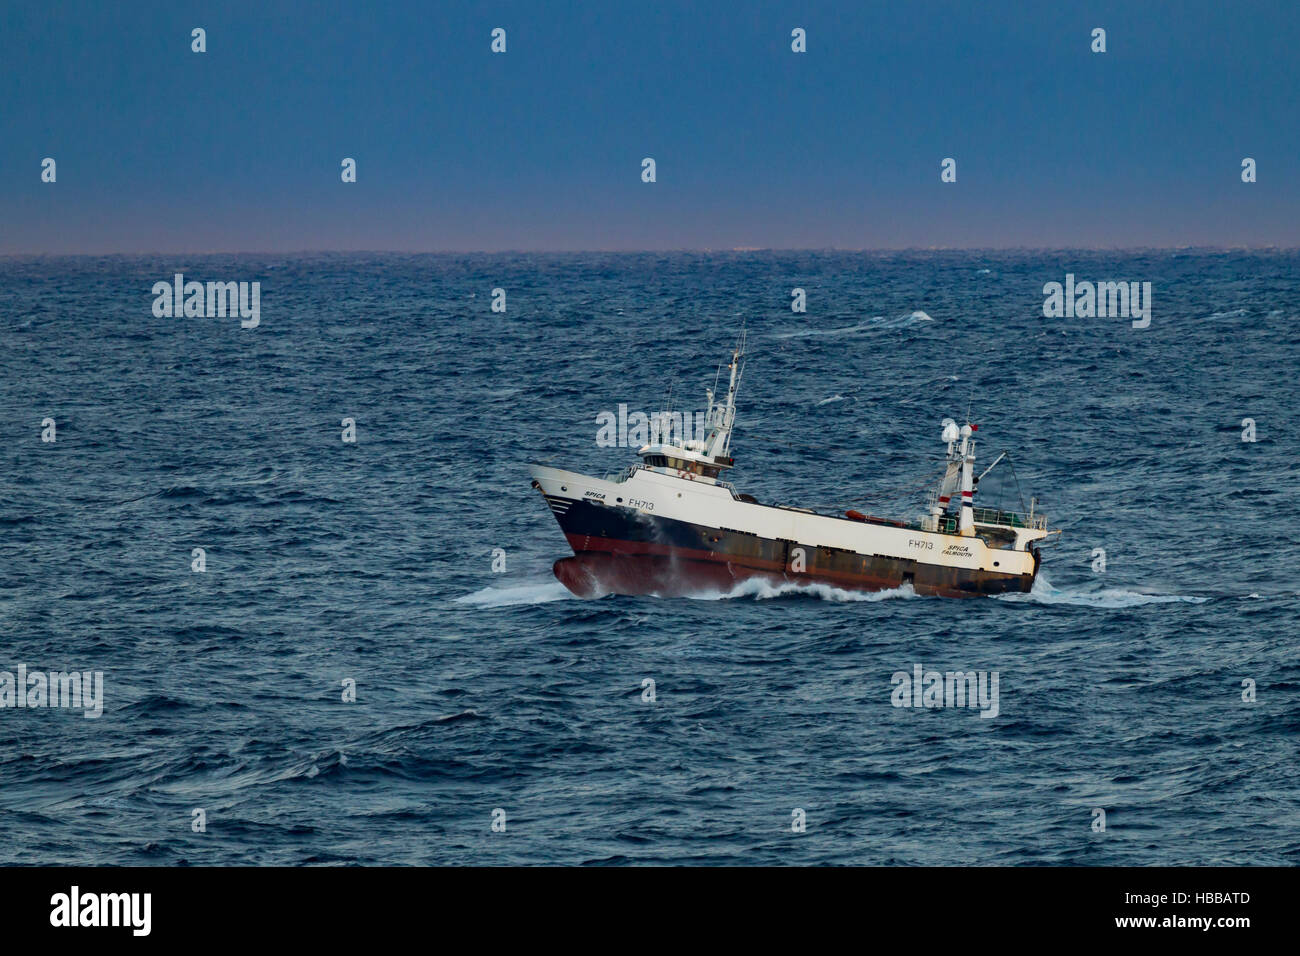 Spica arrastreros de pesca en mares agitados en el Atlántico. Foto de stock